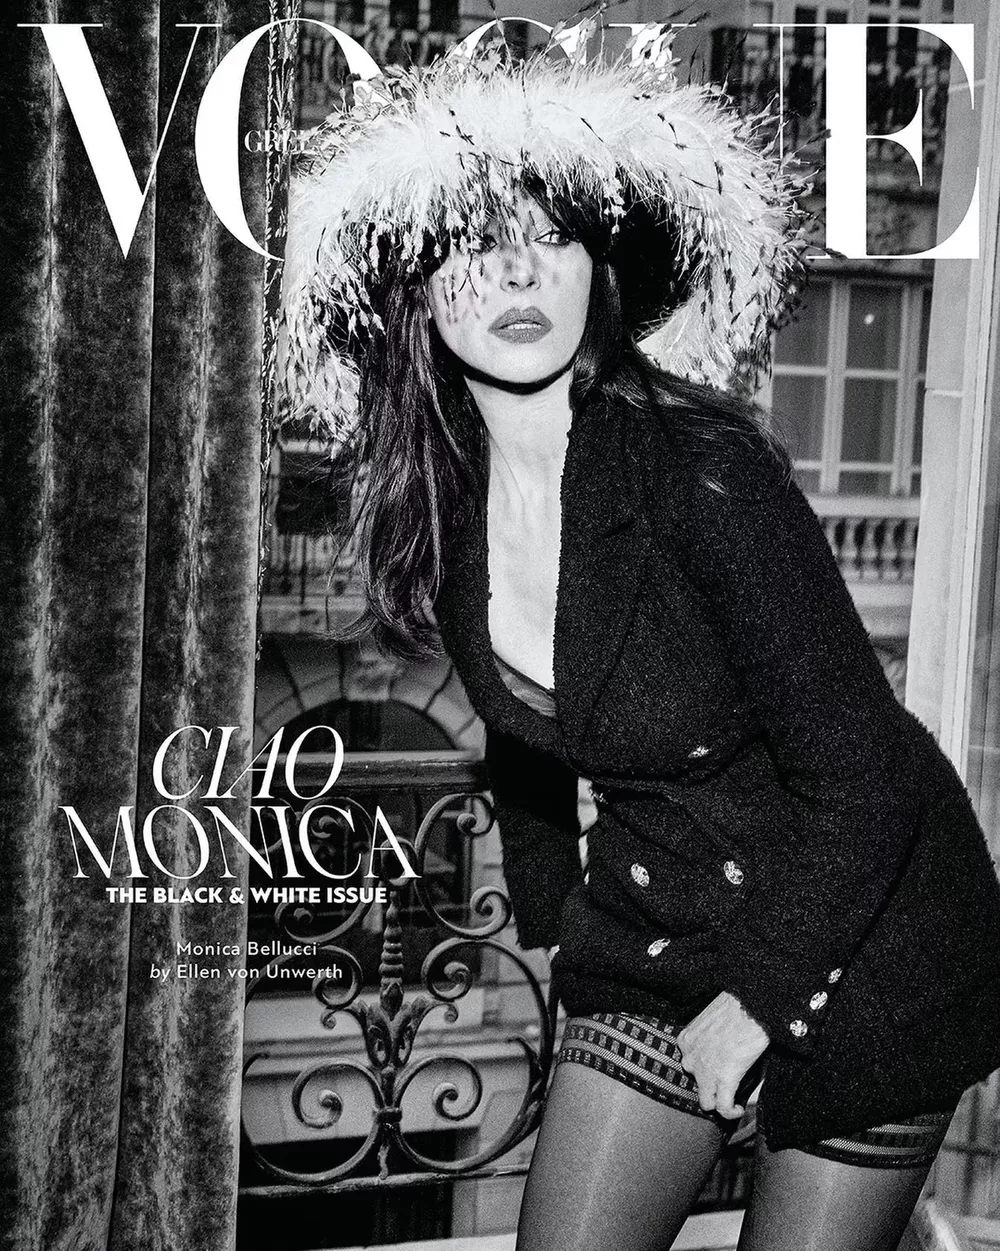 58-летняя Моника Беллуччи снялась для обложки греческого Vogue